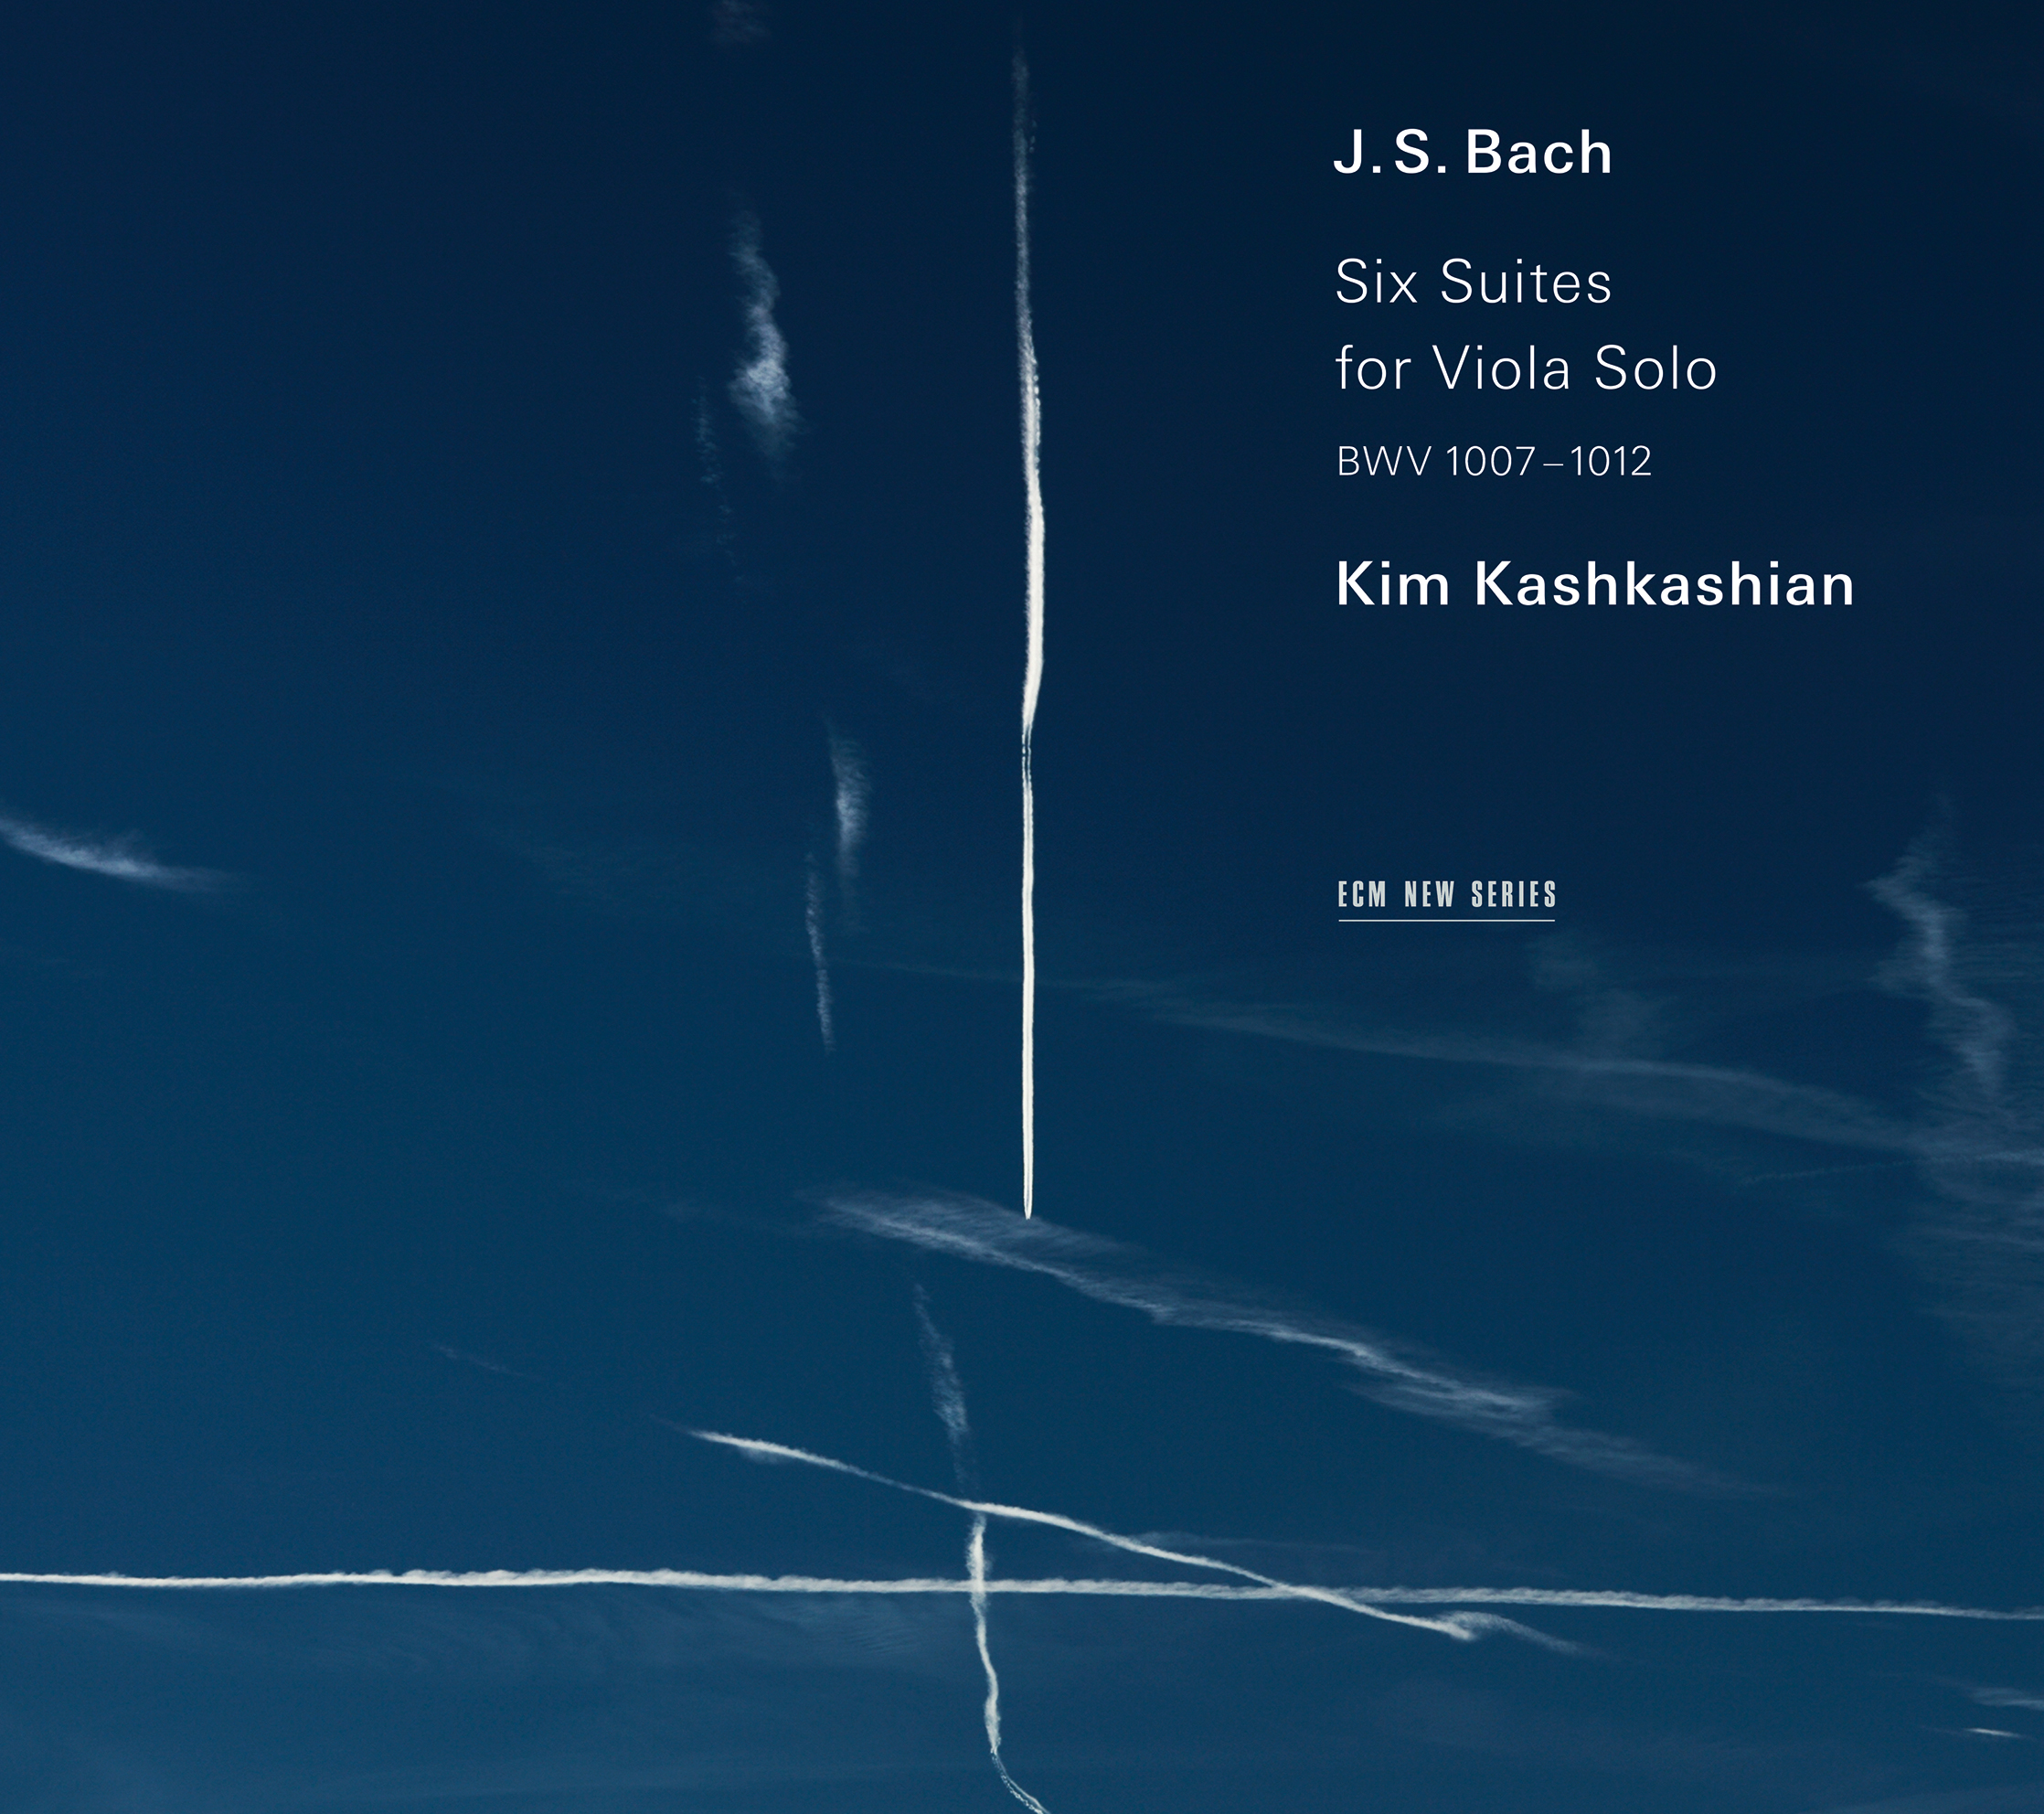 <p>Six Suites for Viola Solo<br />
J.S. Bach</p>
